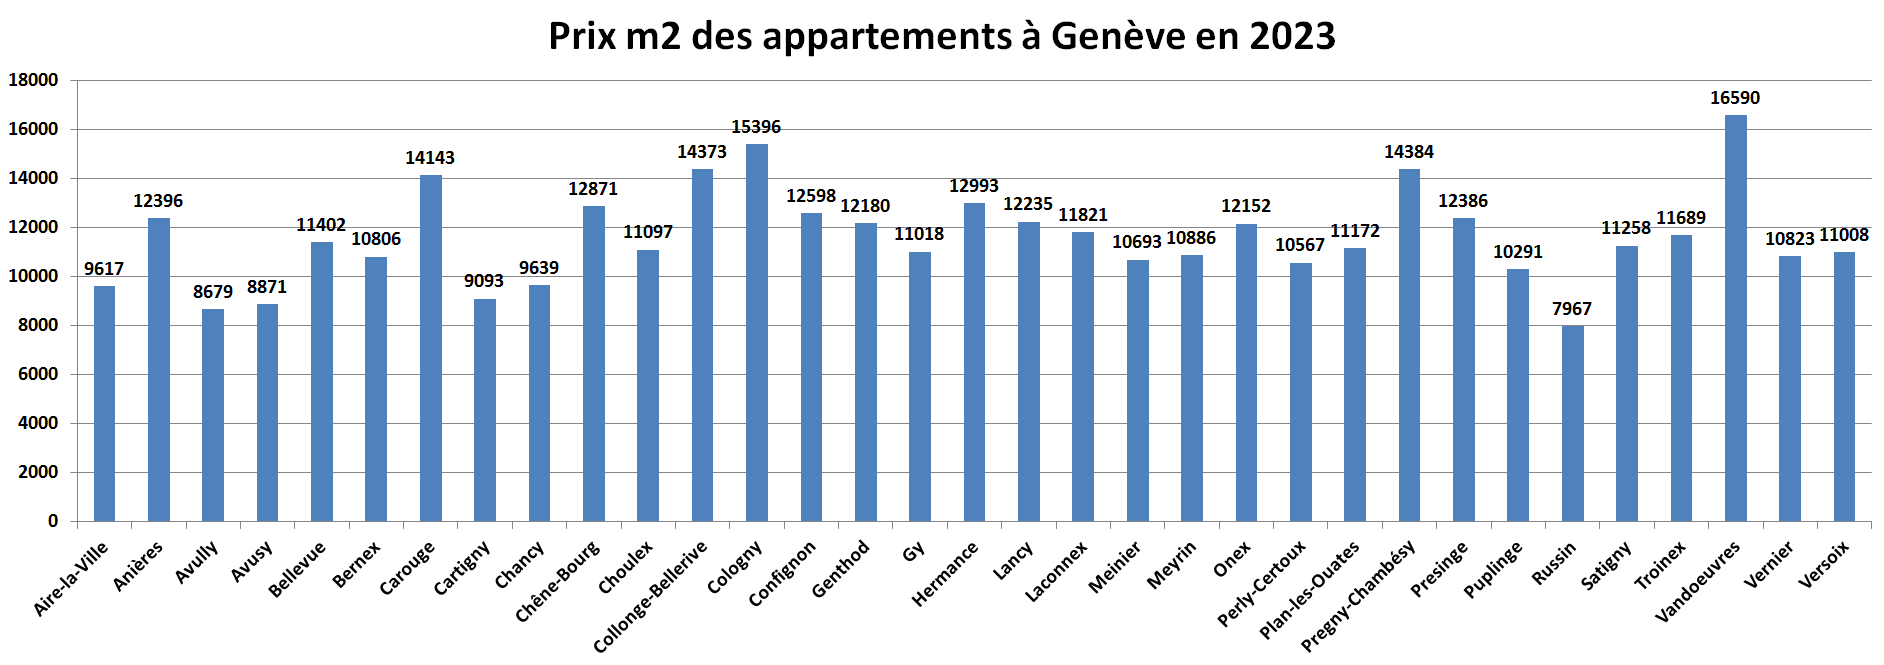 prix m2 immobilier appartement geneve par commune 2023